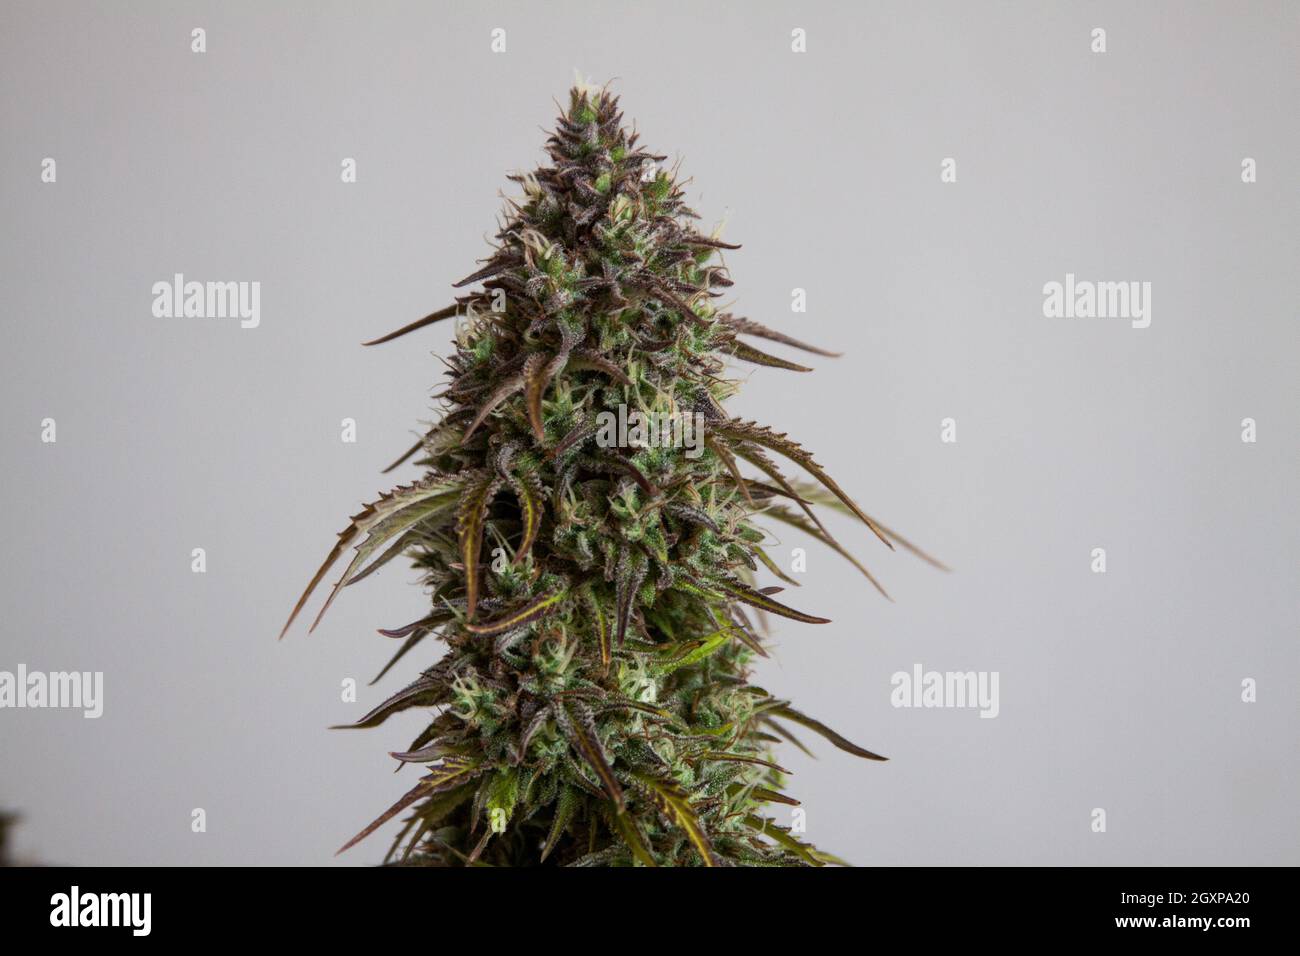 Marihuana female flower plant Stock Photo